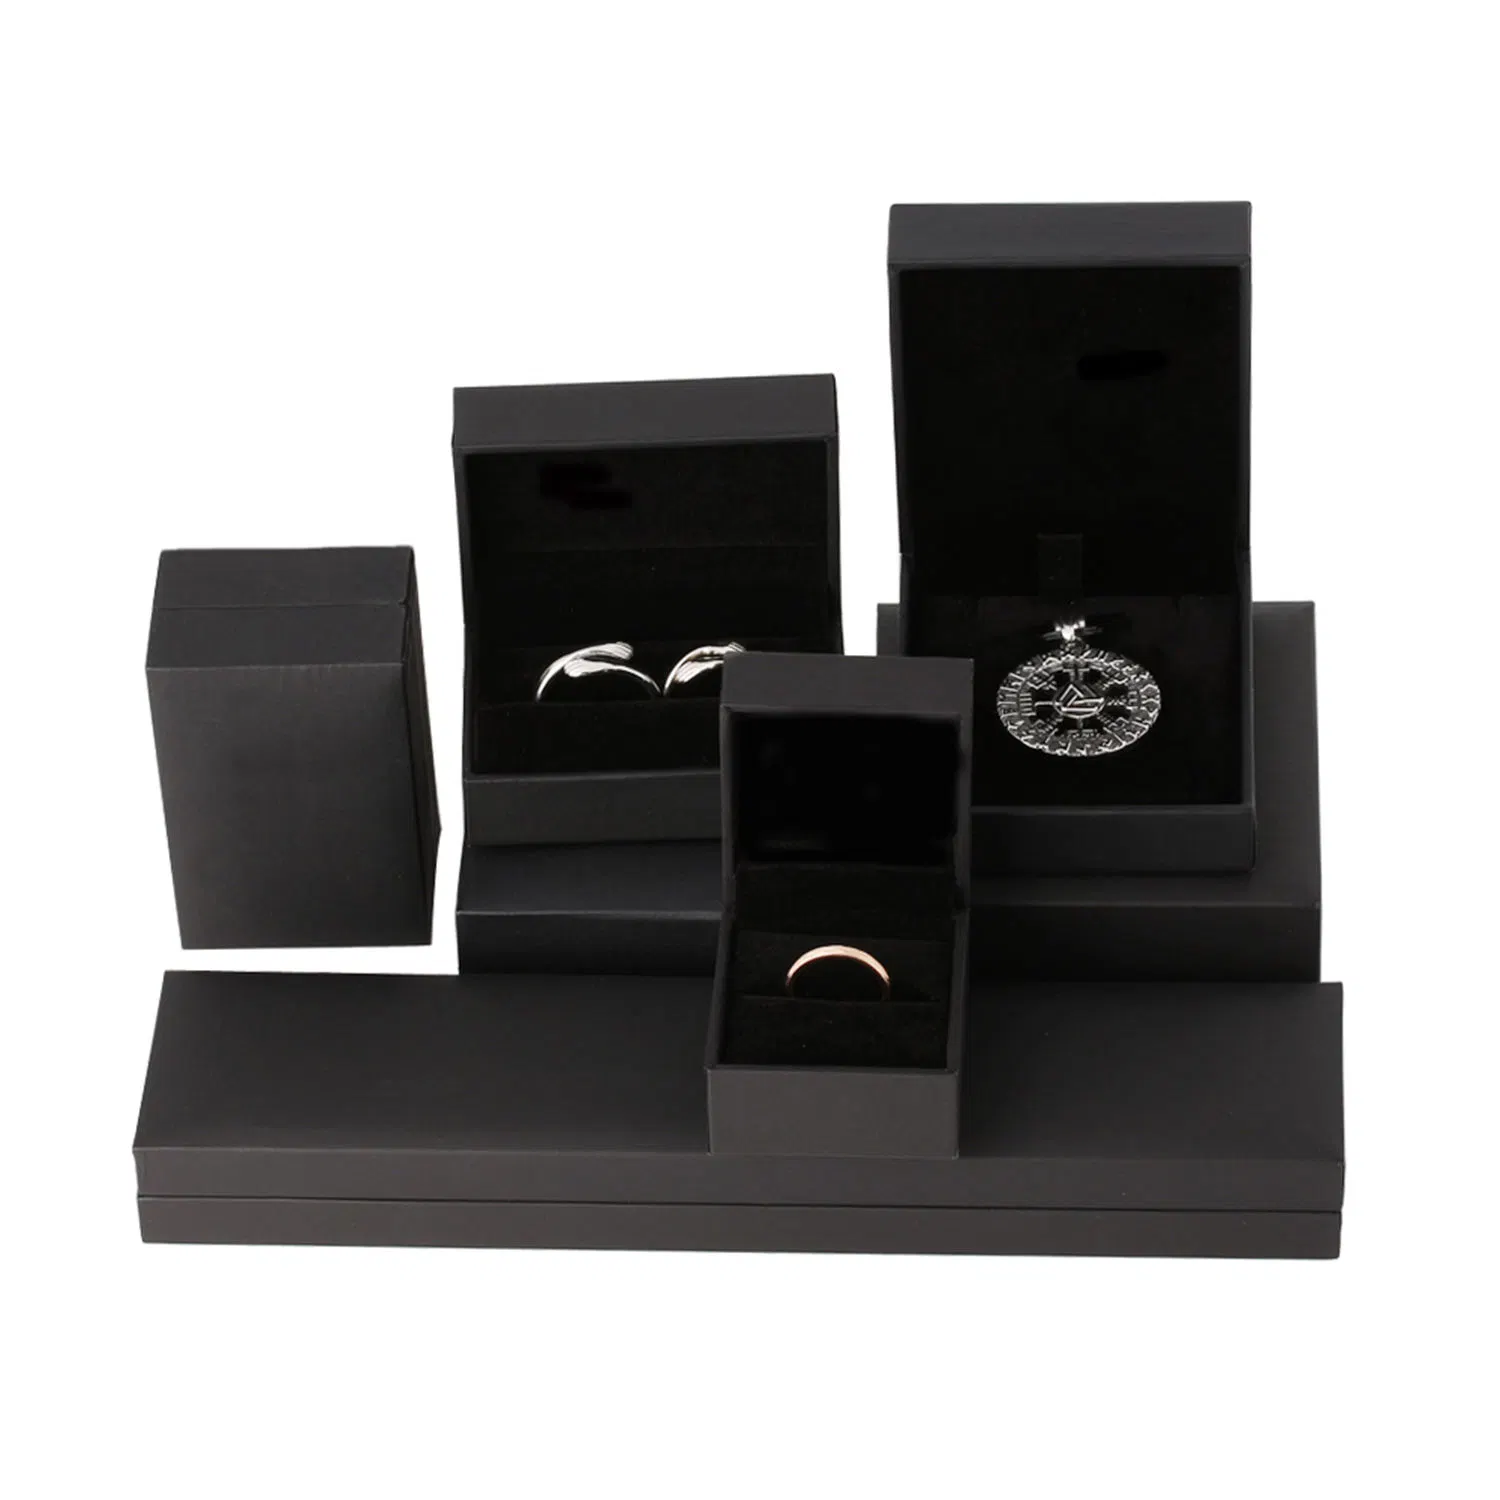 Оптовая черная кожаная бумажная ювелирная коробка для серьги /угла /браслета /Pendant /Ring /Jewelry Packaging Box